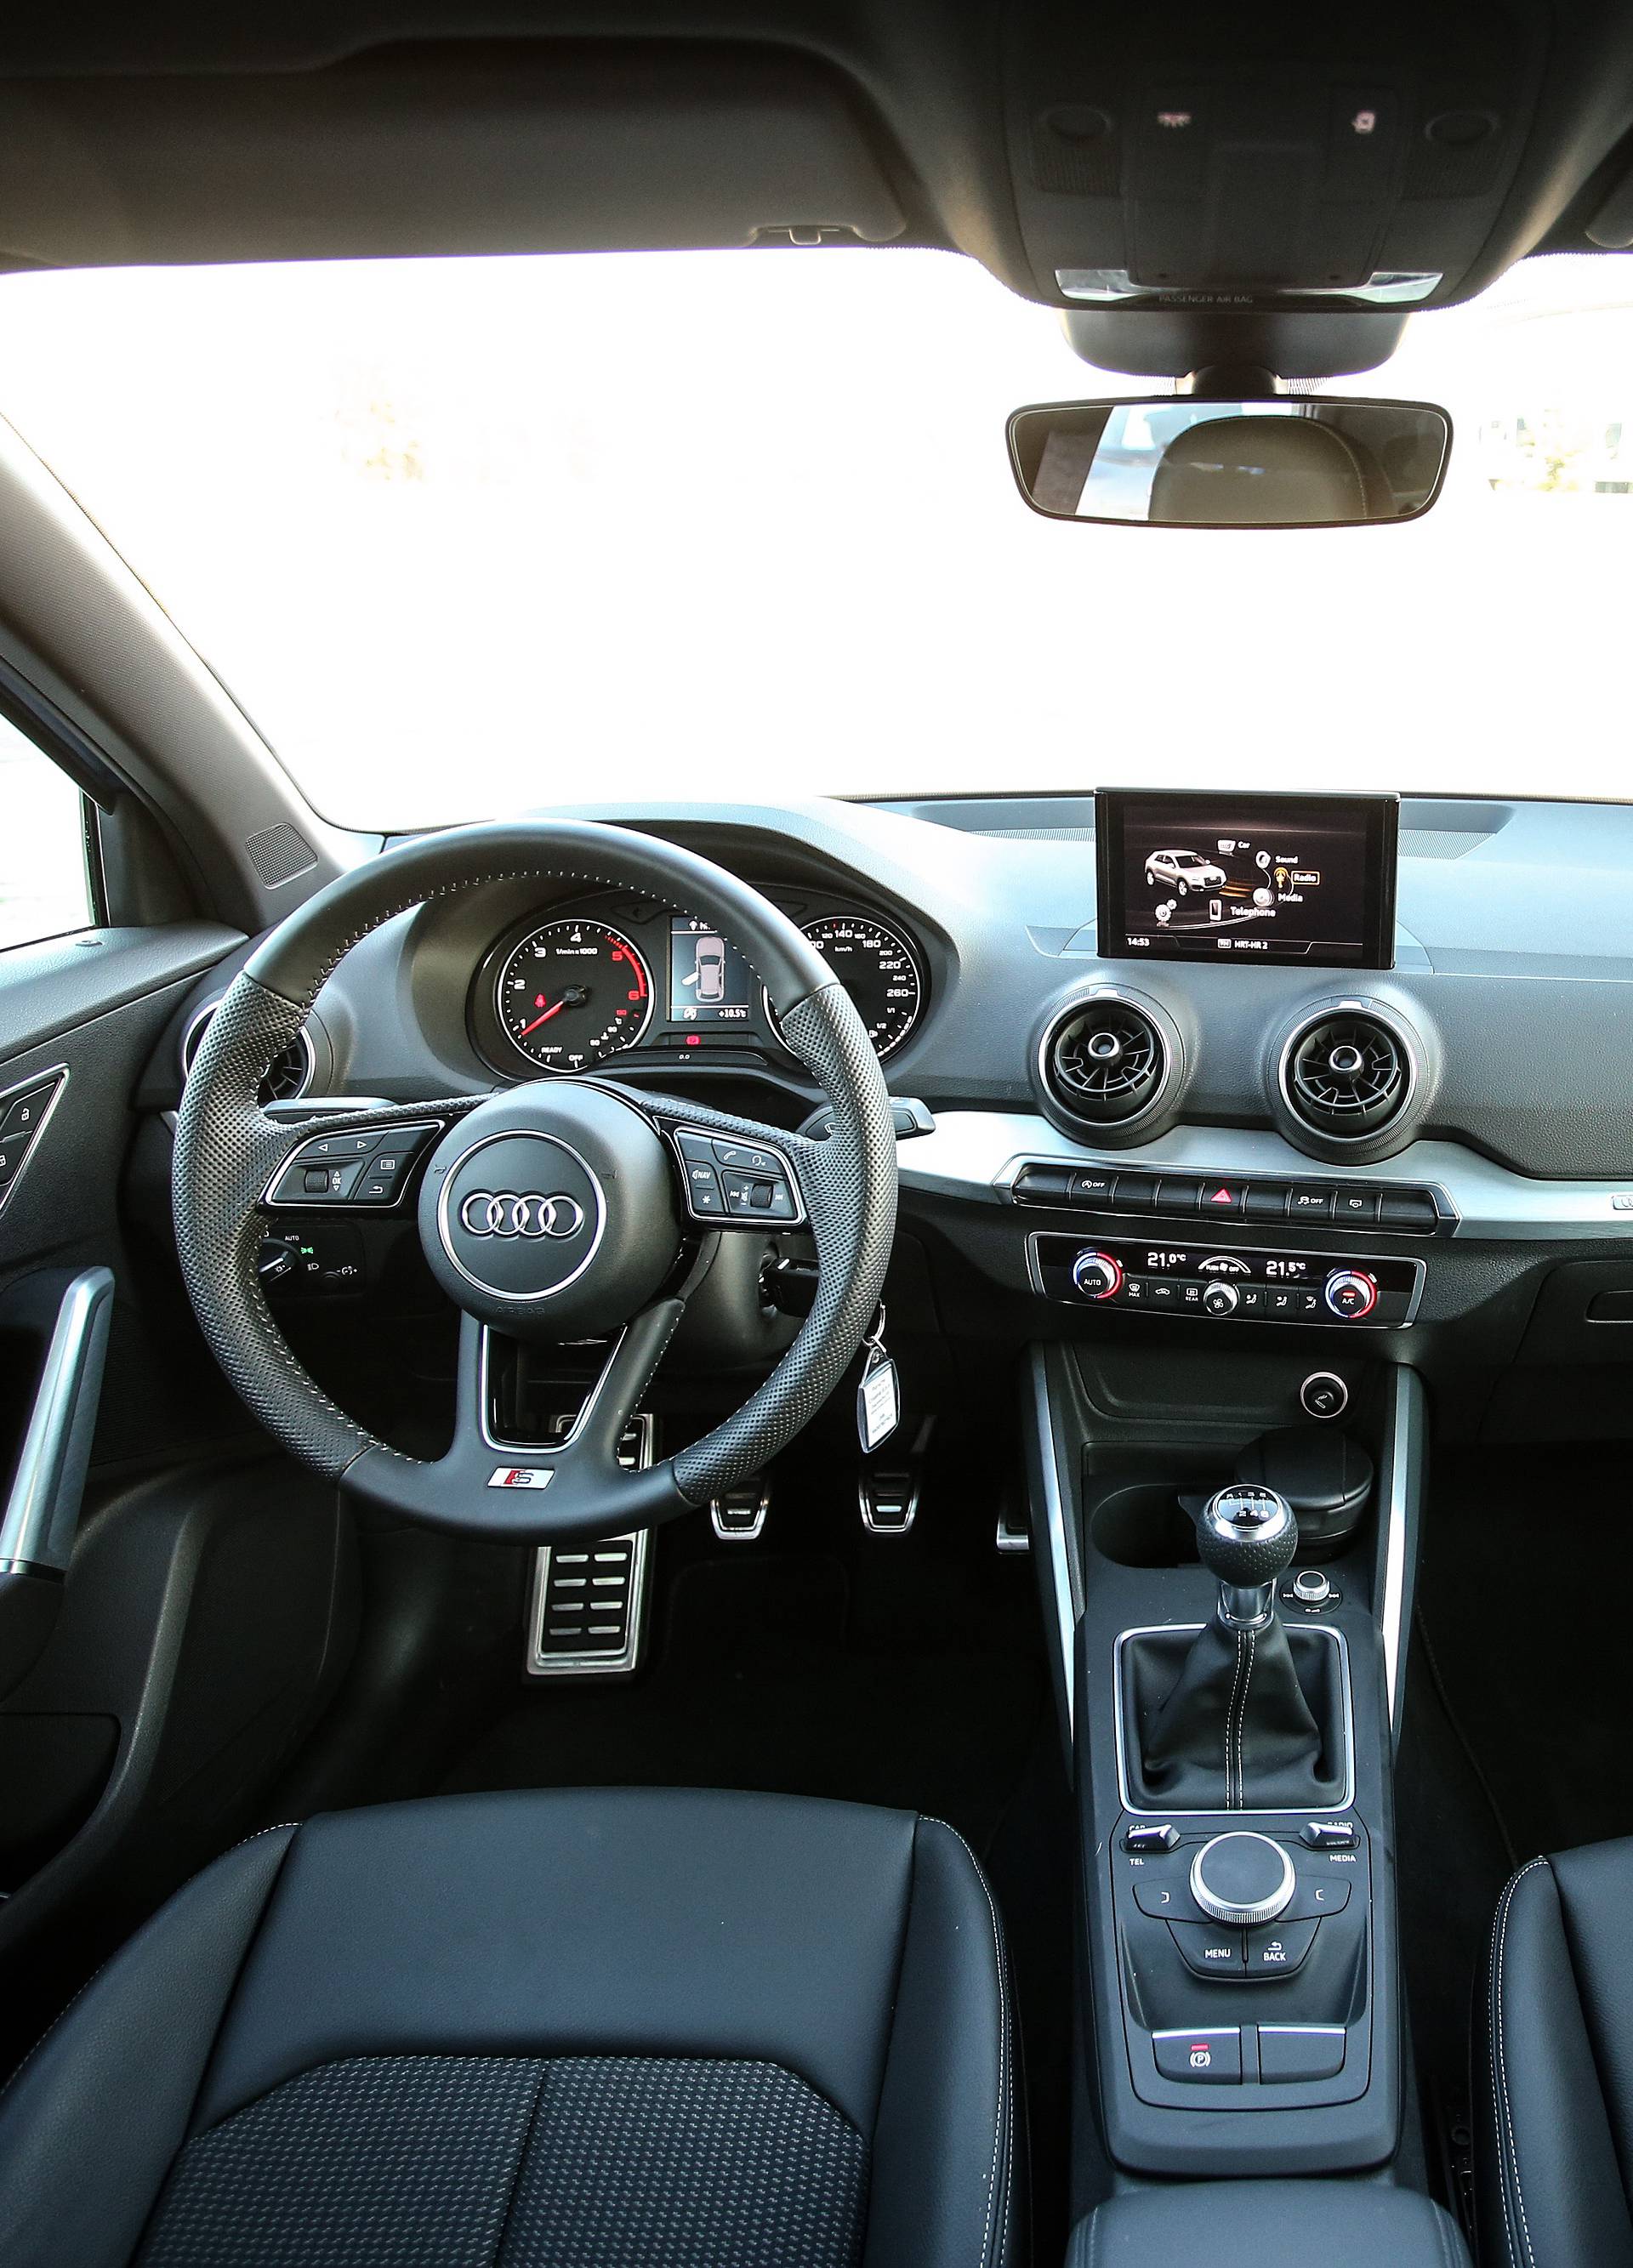 Najrazigraniji Audi uz dobar izgled nudi i praktične strane